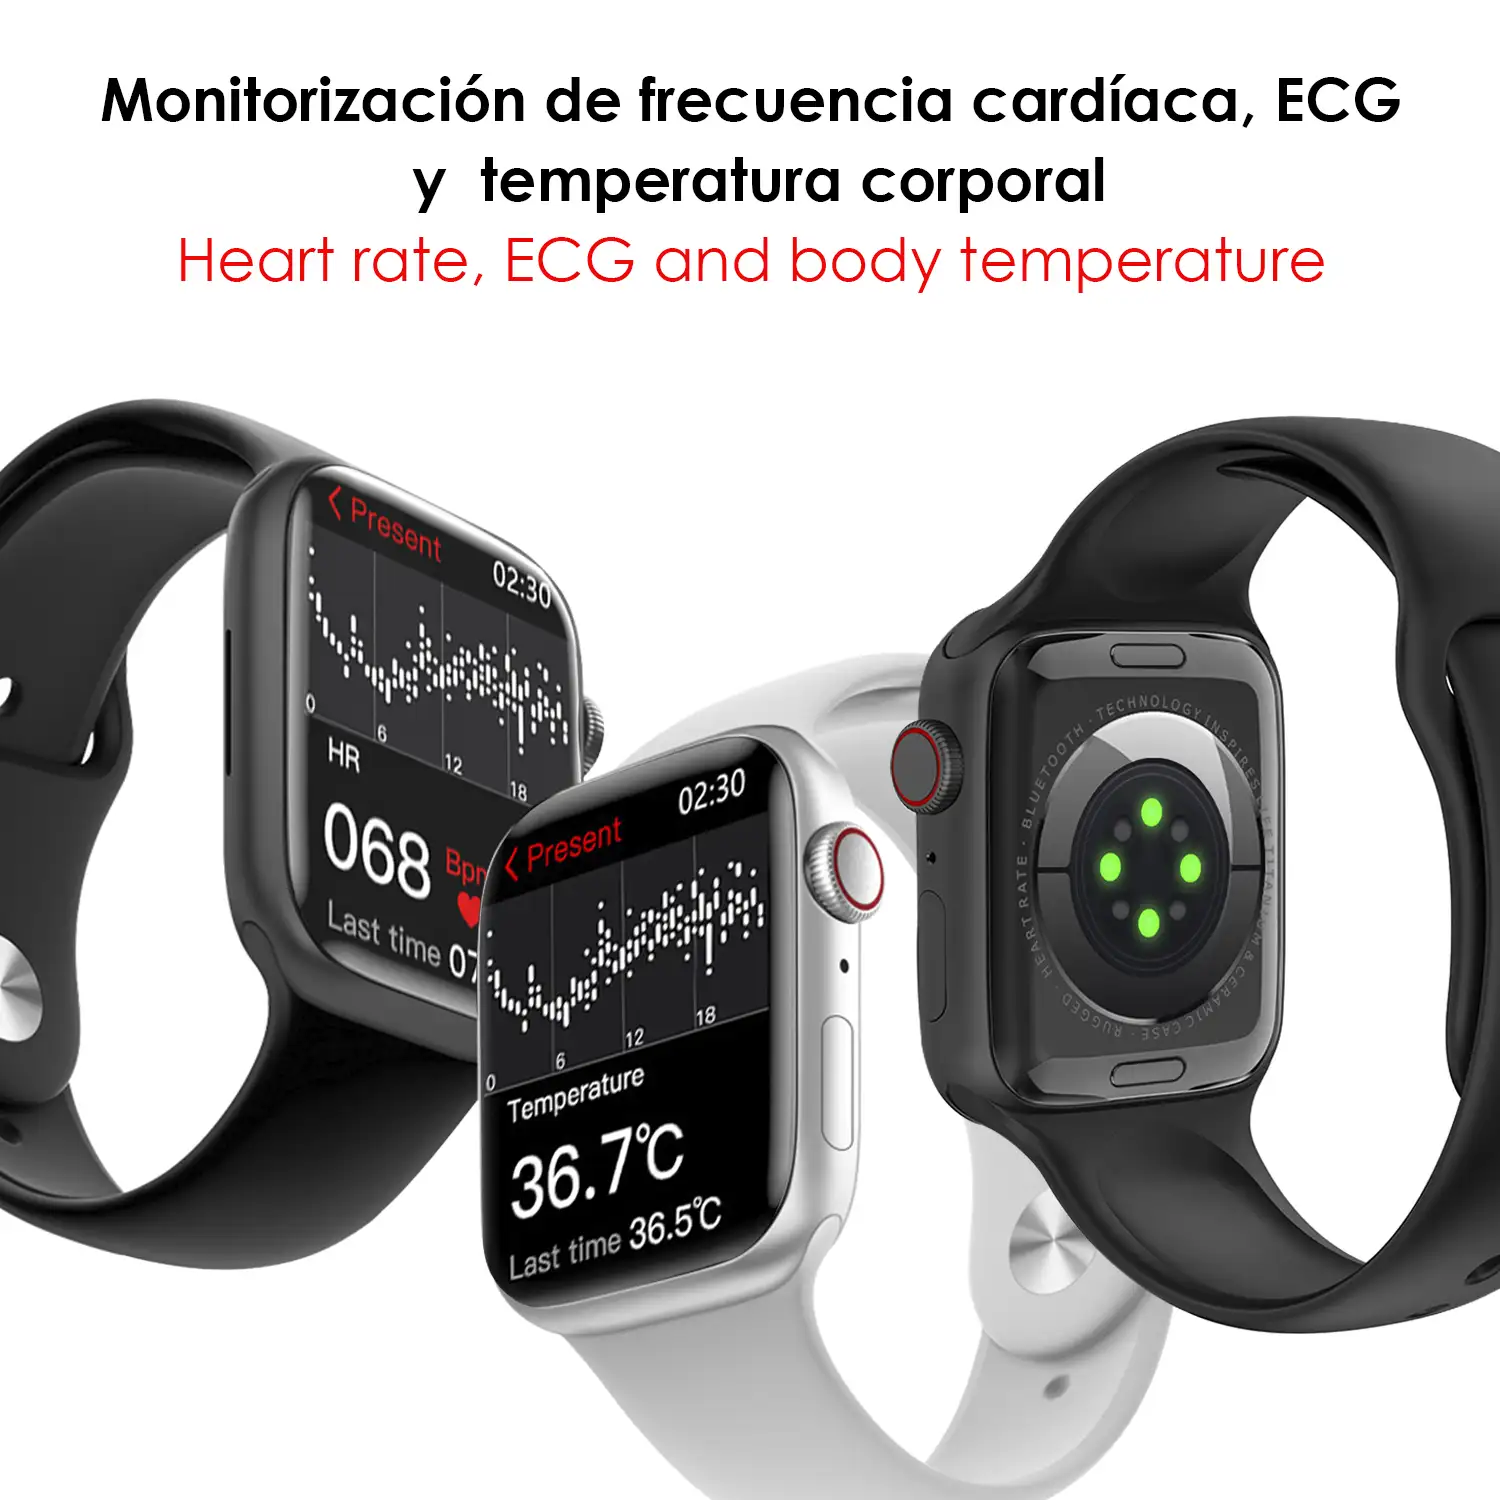 Smartwatch W29 Max con pantalla de 2.1 y modo always on. Monitor cardiaco 24h, O2 en sangre, Termómetro corporal,notificaciones de Apps.